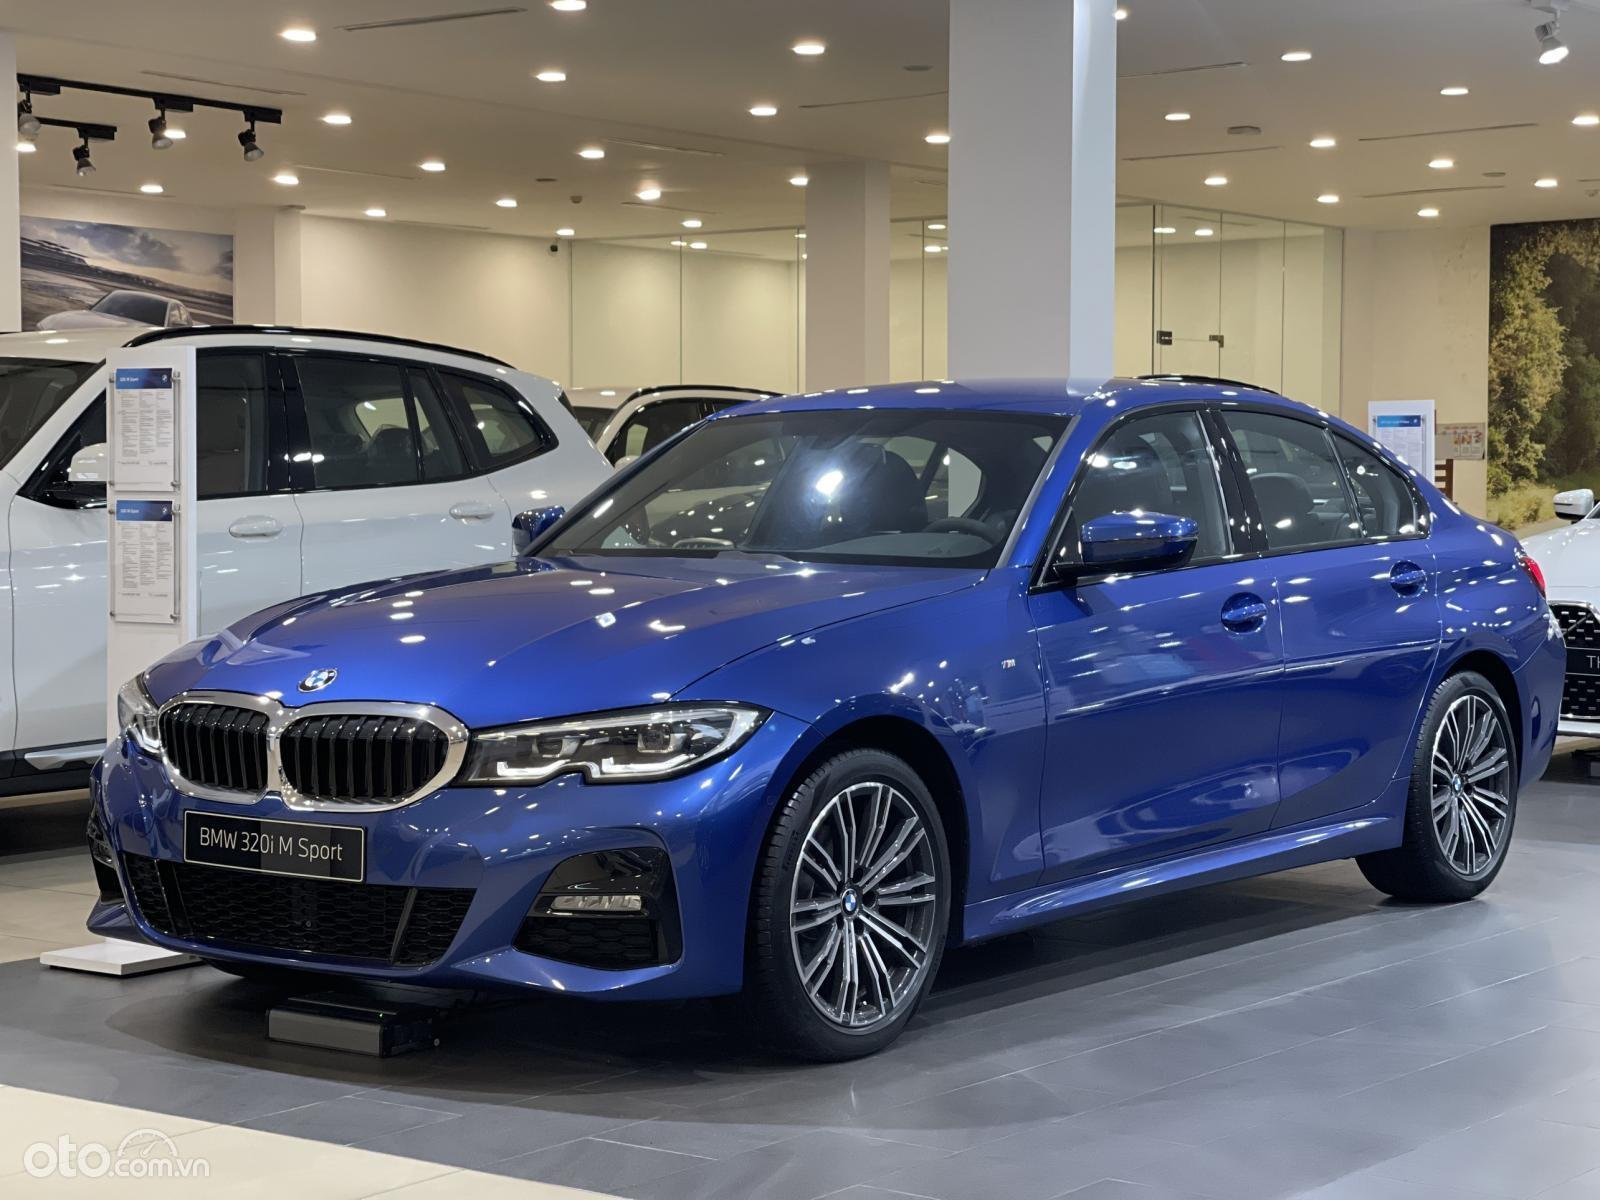 Đánh giá xe BMW 320i 2017 Mạnh mẽ sắc sảo đầy lôi cuốn